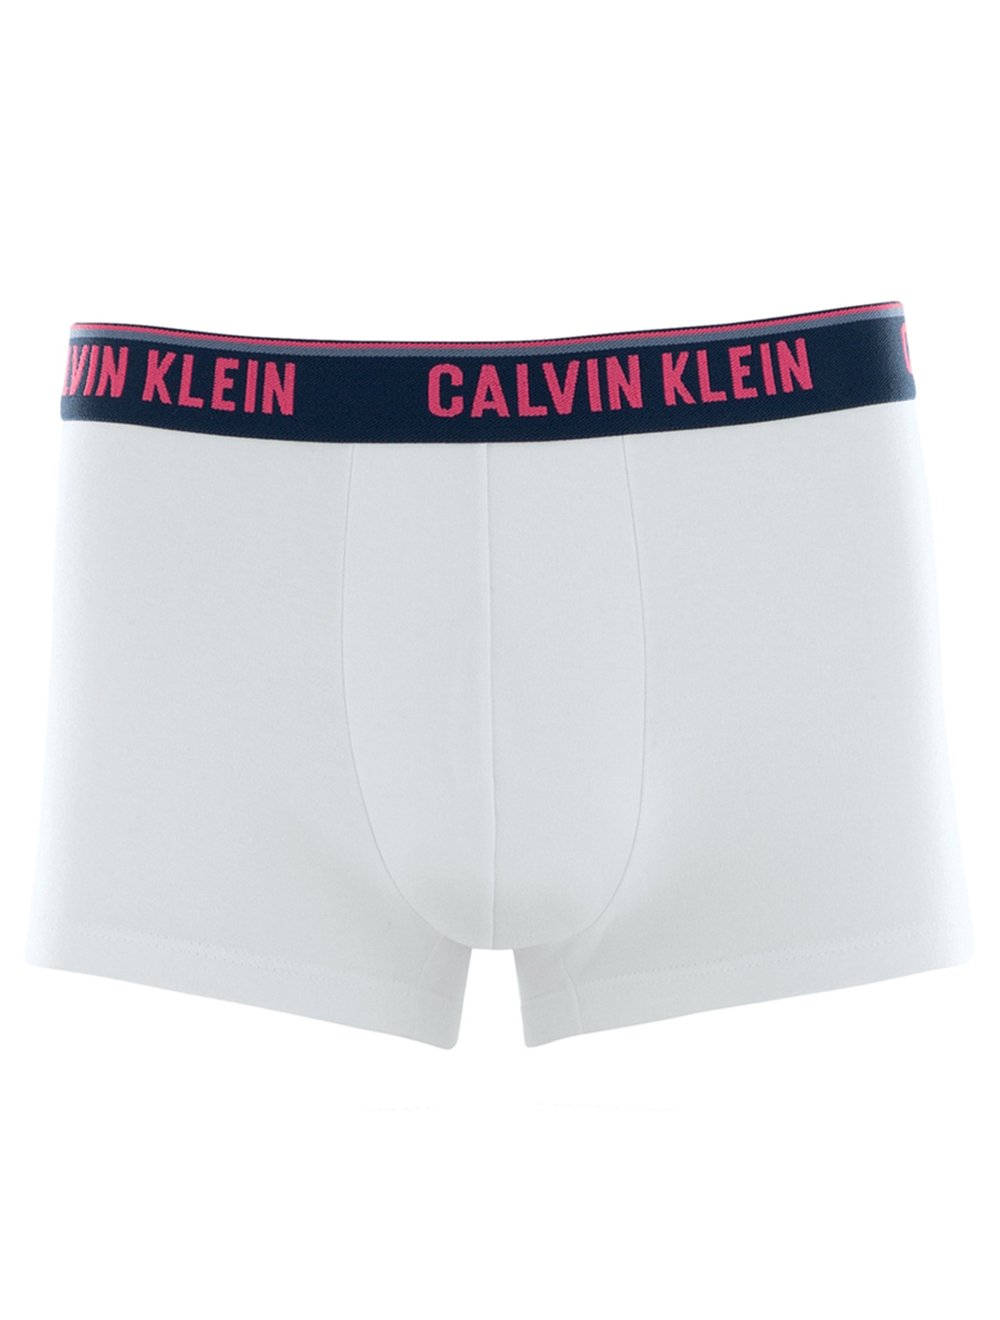 Cueca Calvin Klein Trunk Mag Sash Branca C10.08 BR00 1UN